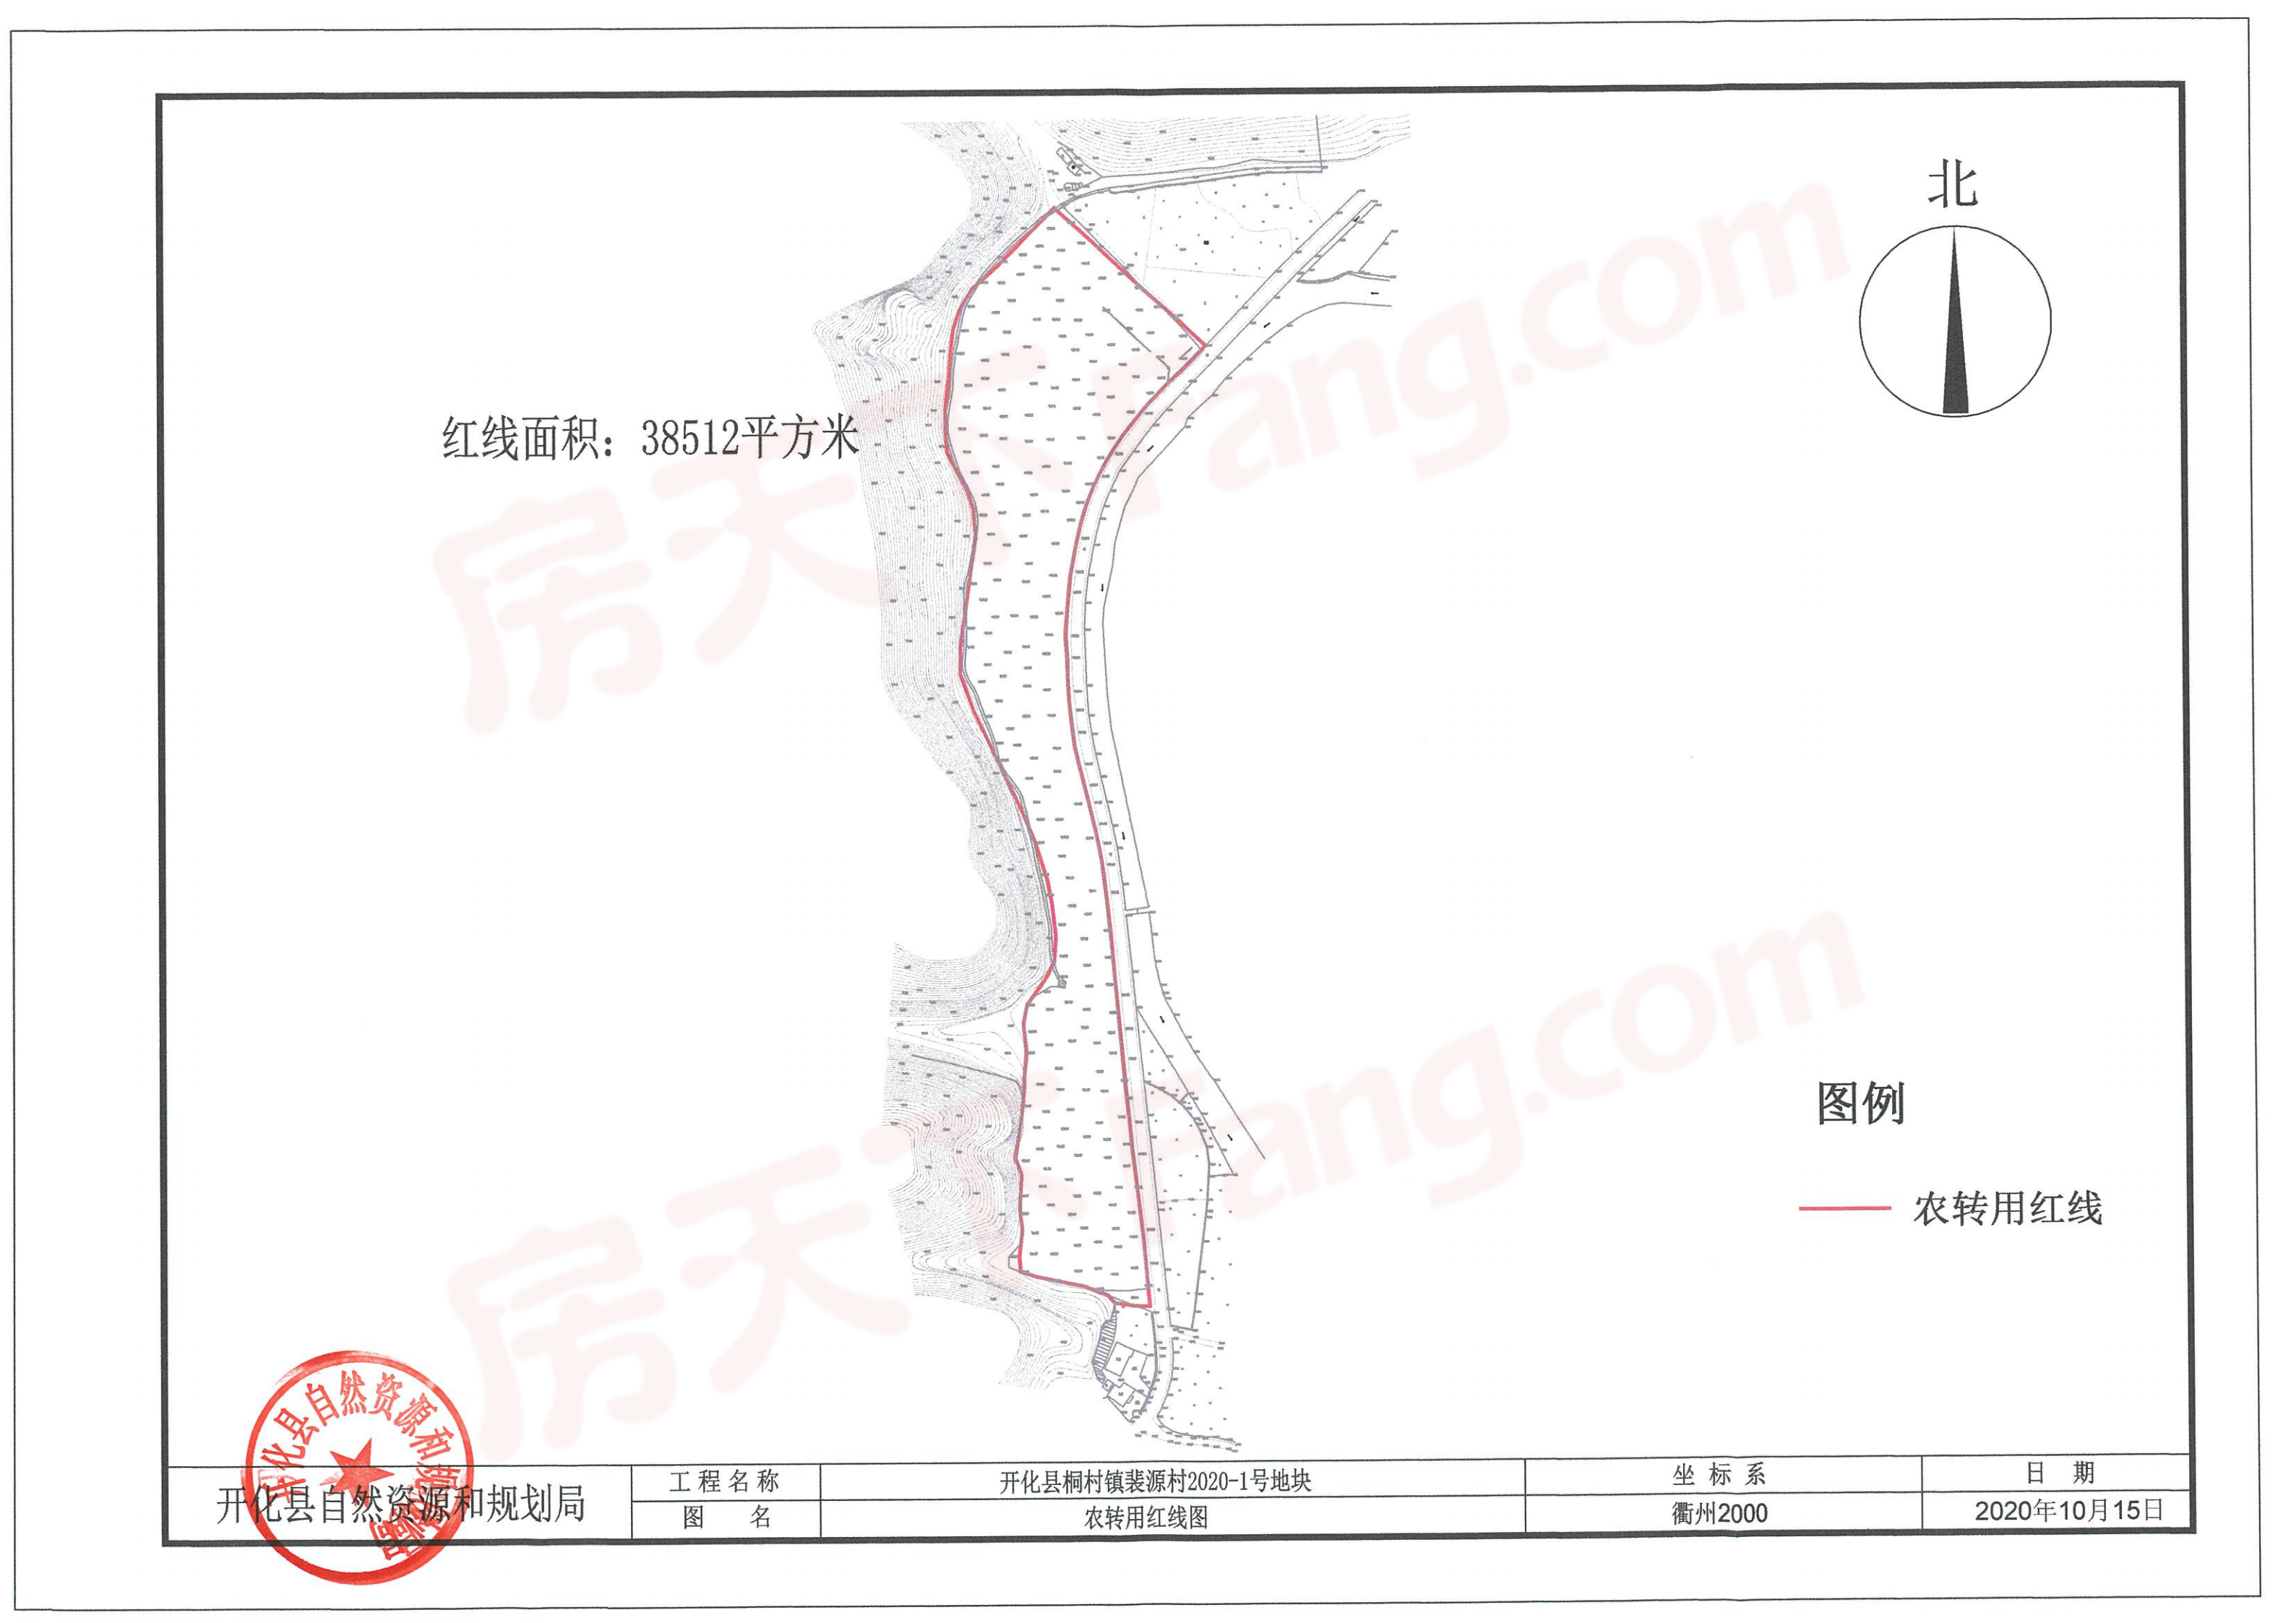 开化县火车站周边规划公示，大棚坞、华埠等多处土地征收启动公告